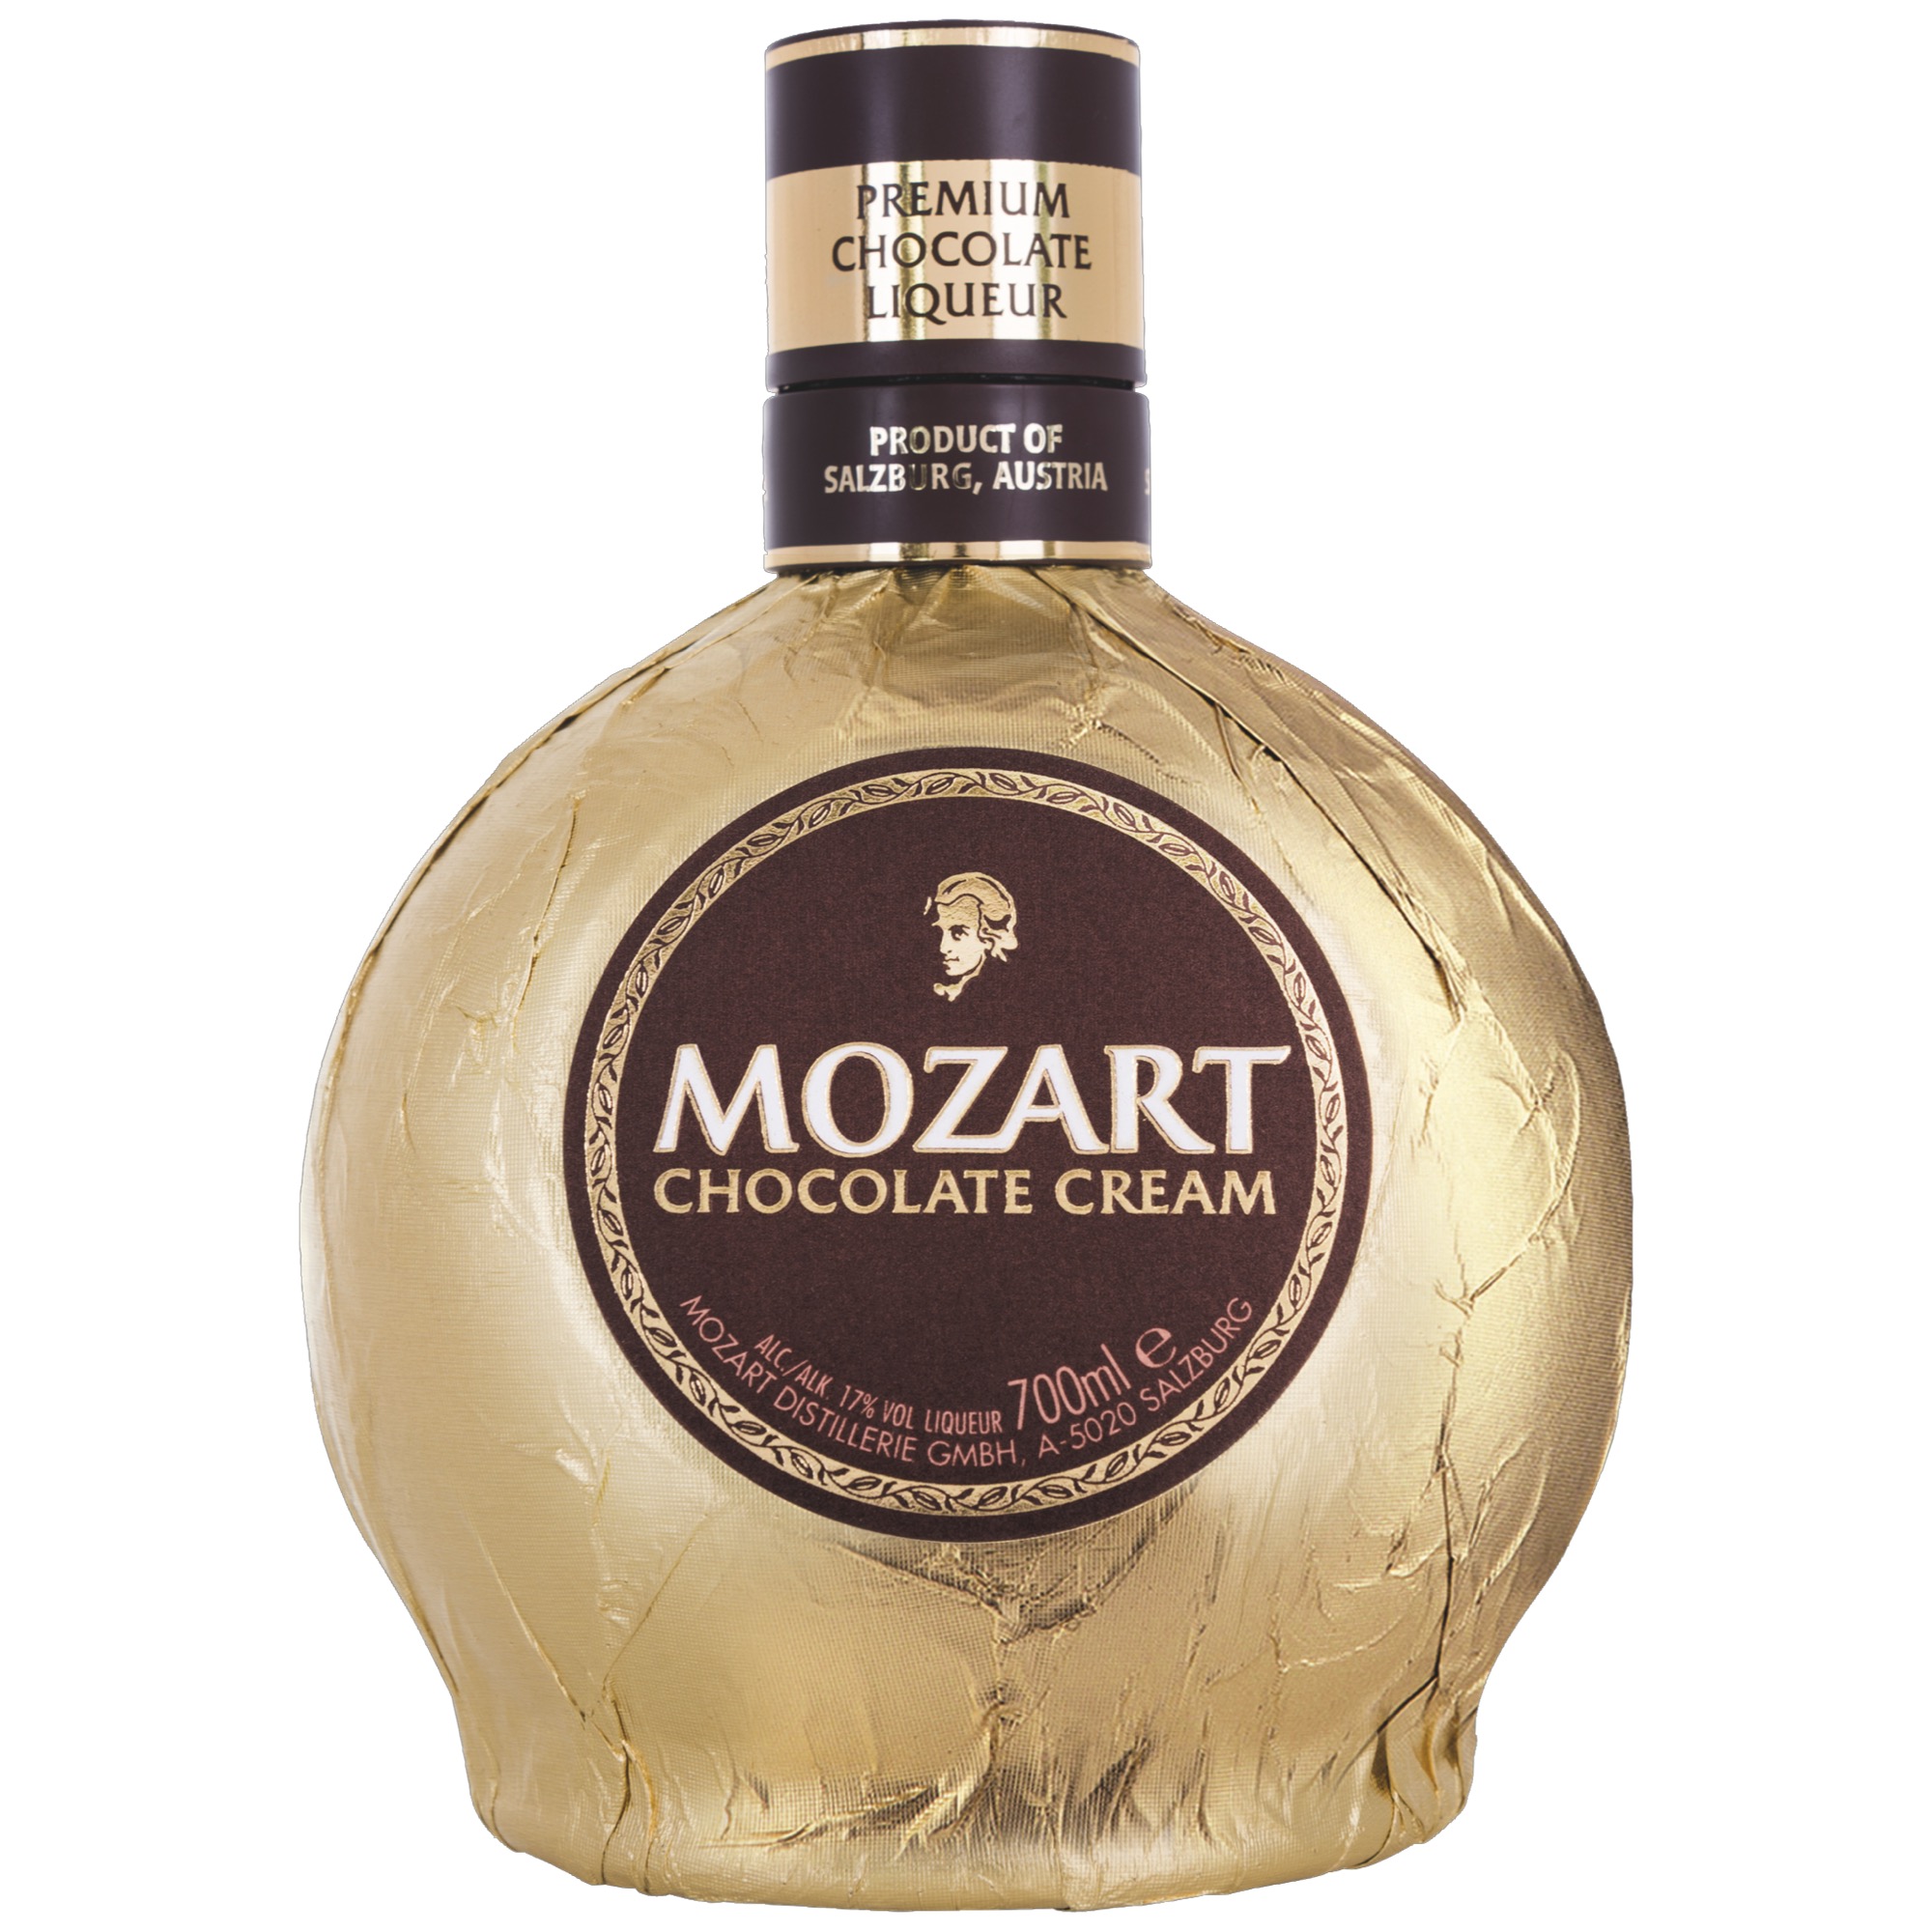 Mozart likér 0,7l, Original